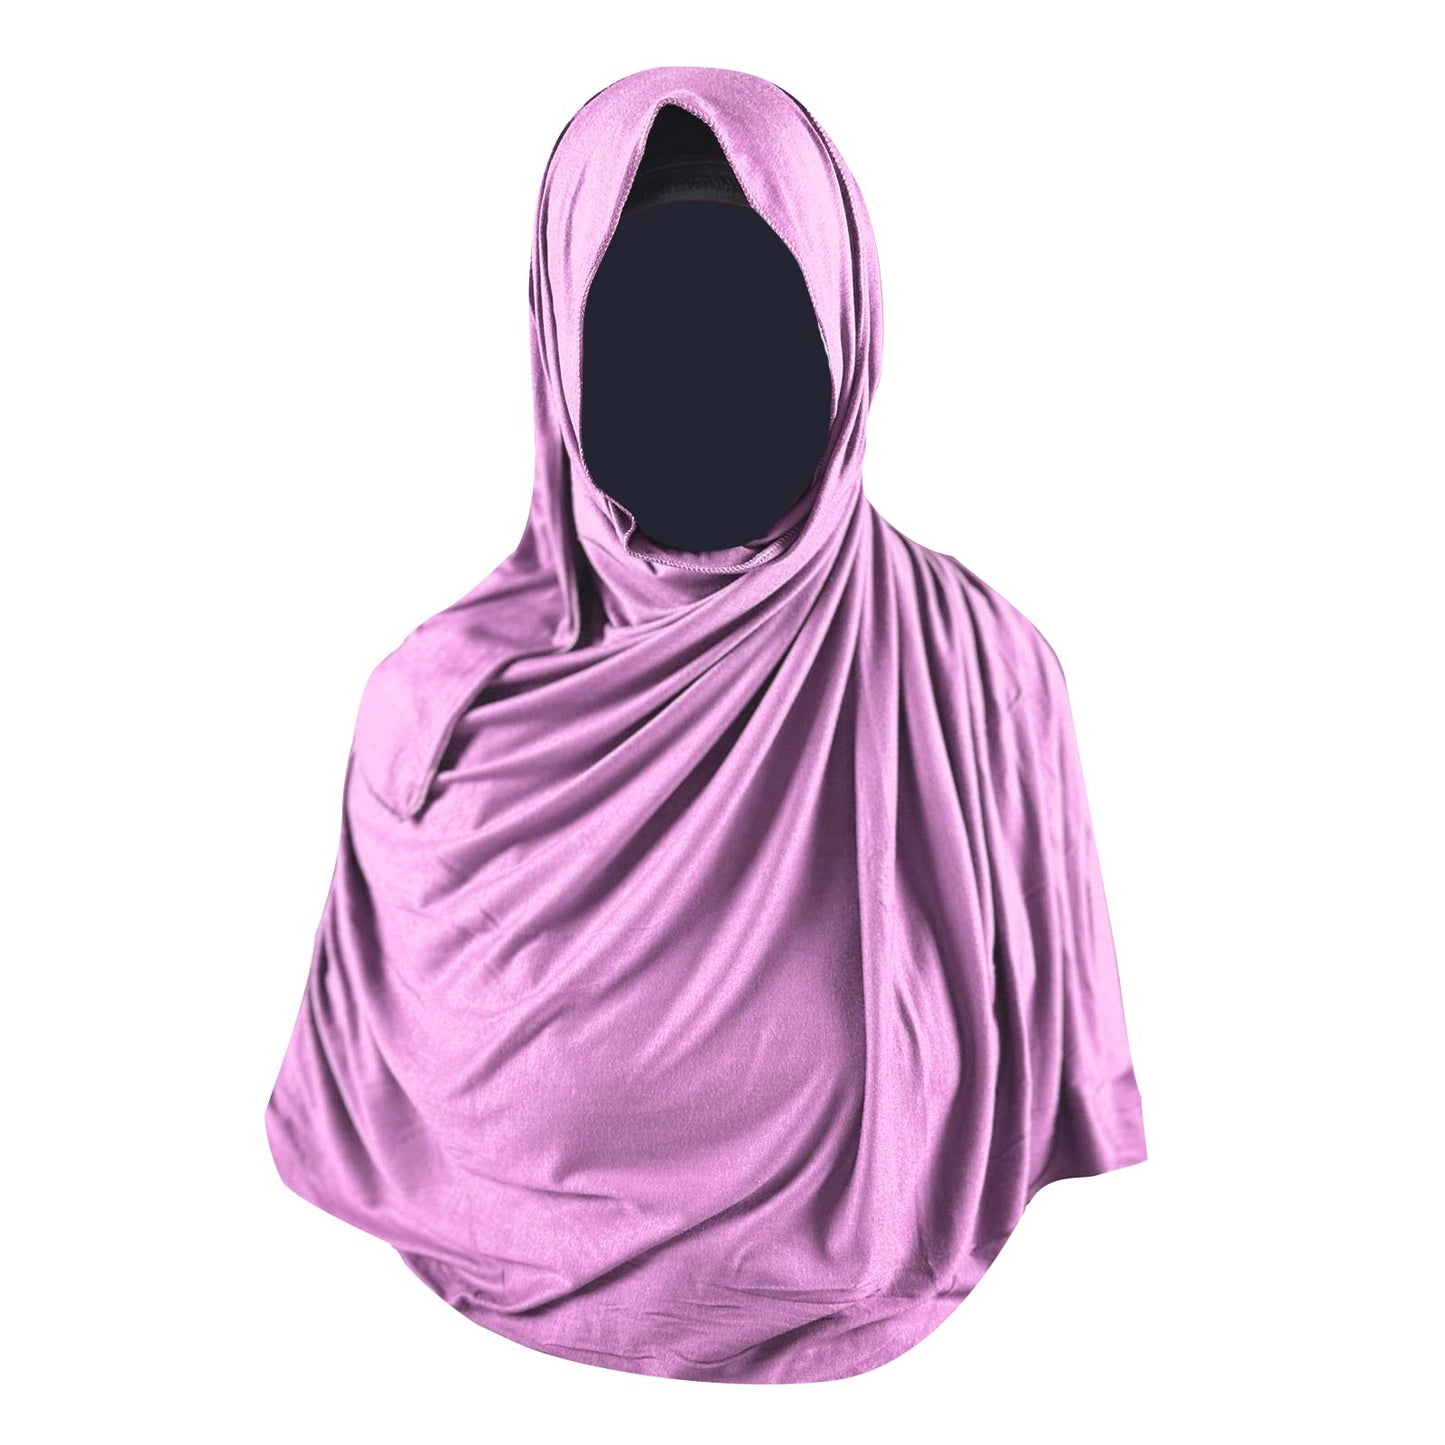 pink jersey hijab, large